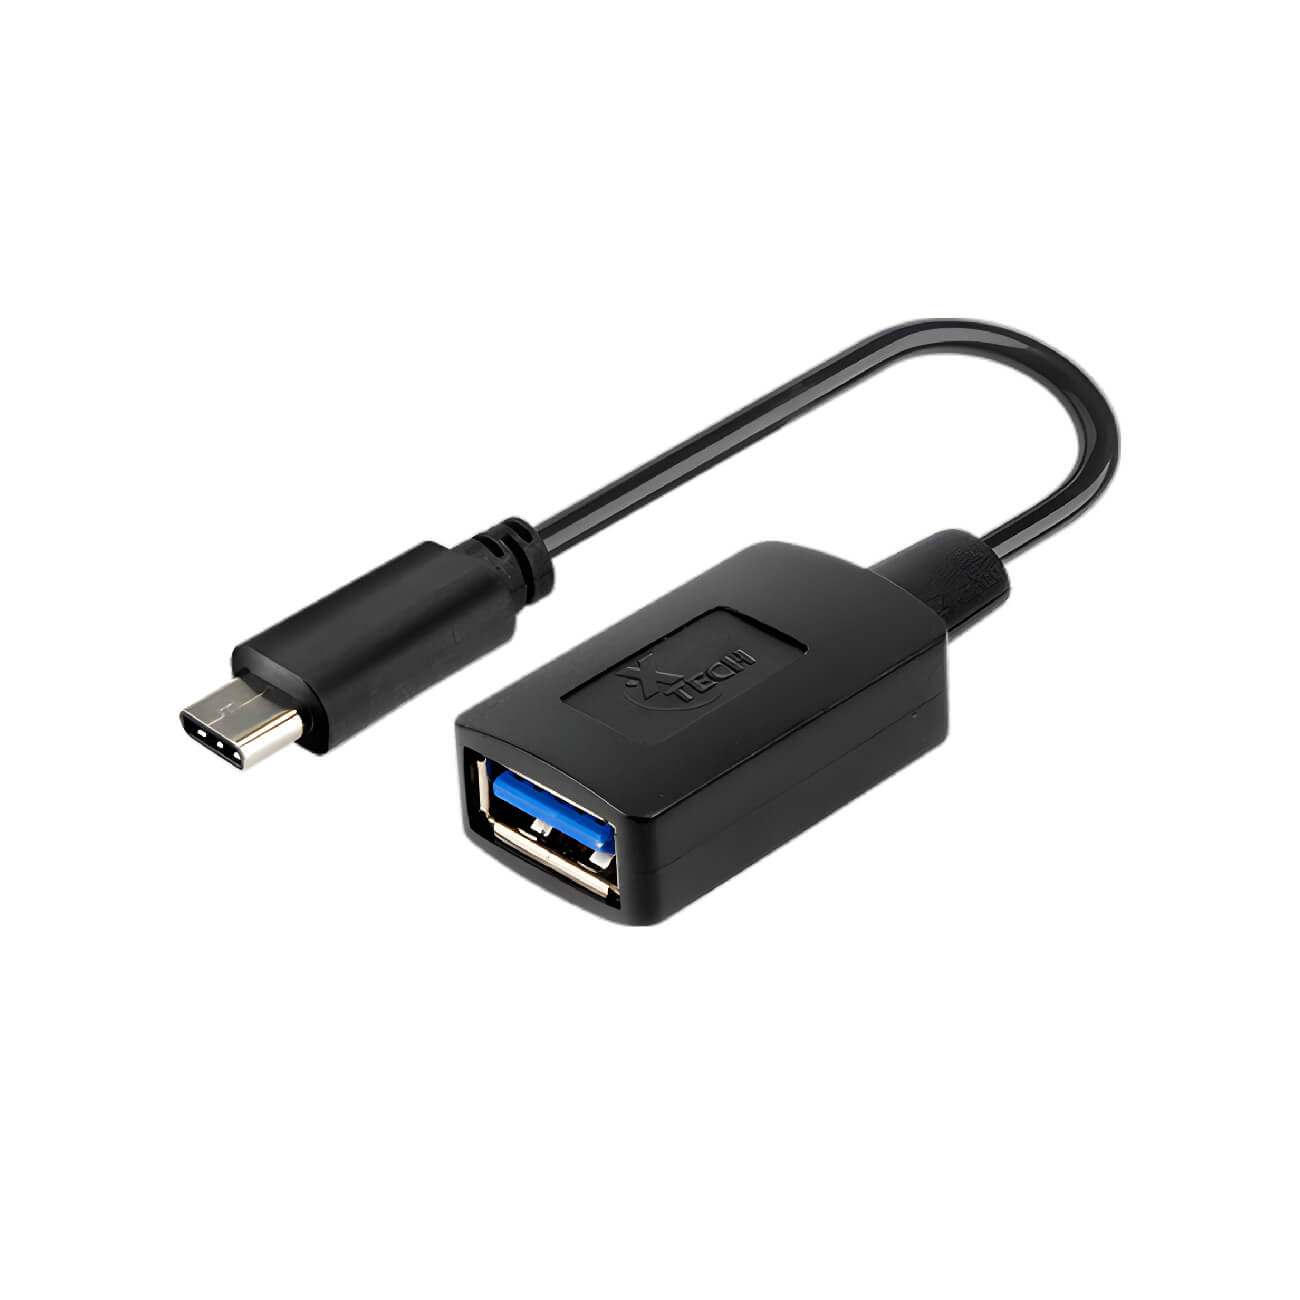 Adaptador de USB C a USB 3.0  XTC-515 – 919034 – Electrónica Panamericana  Guatemala